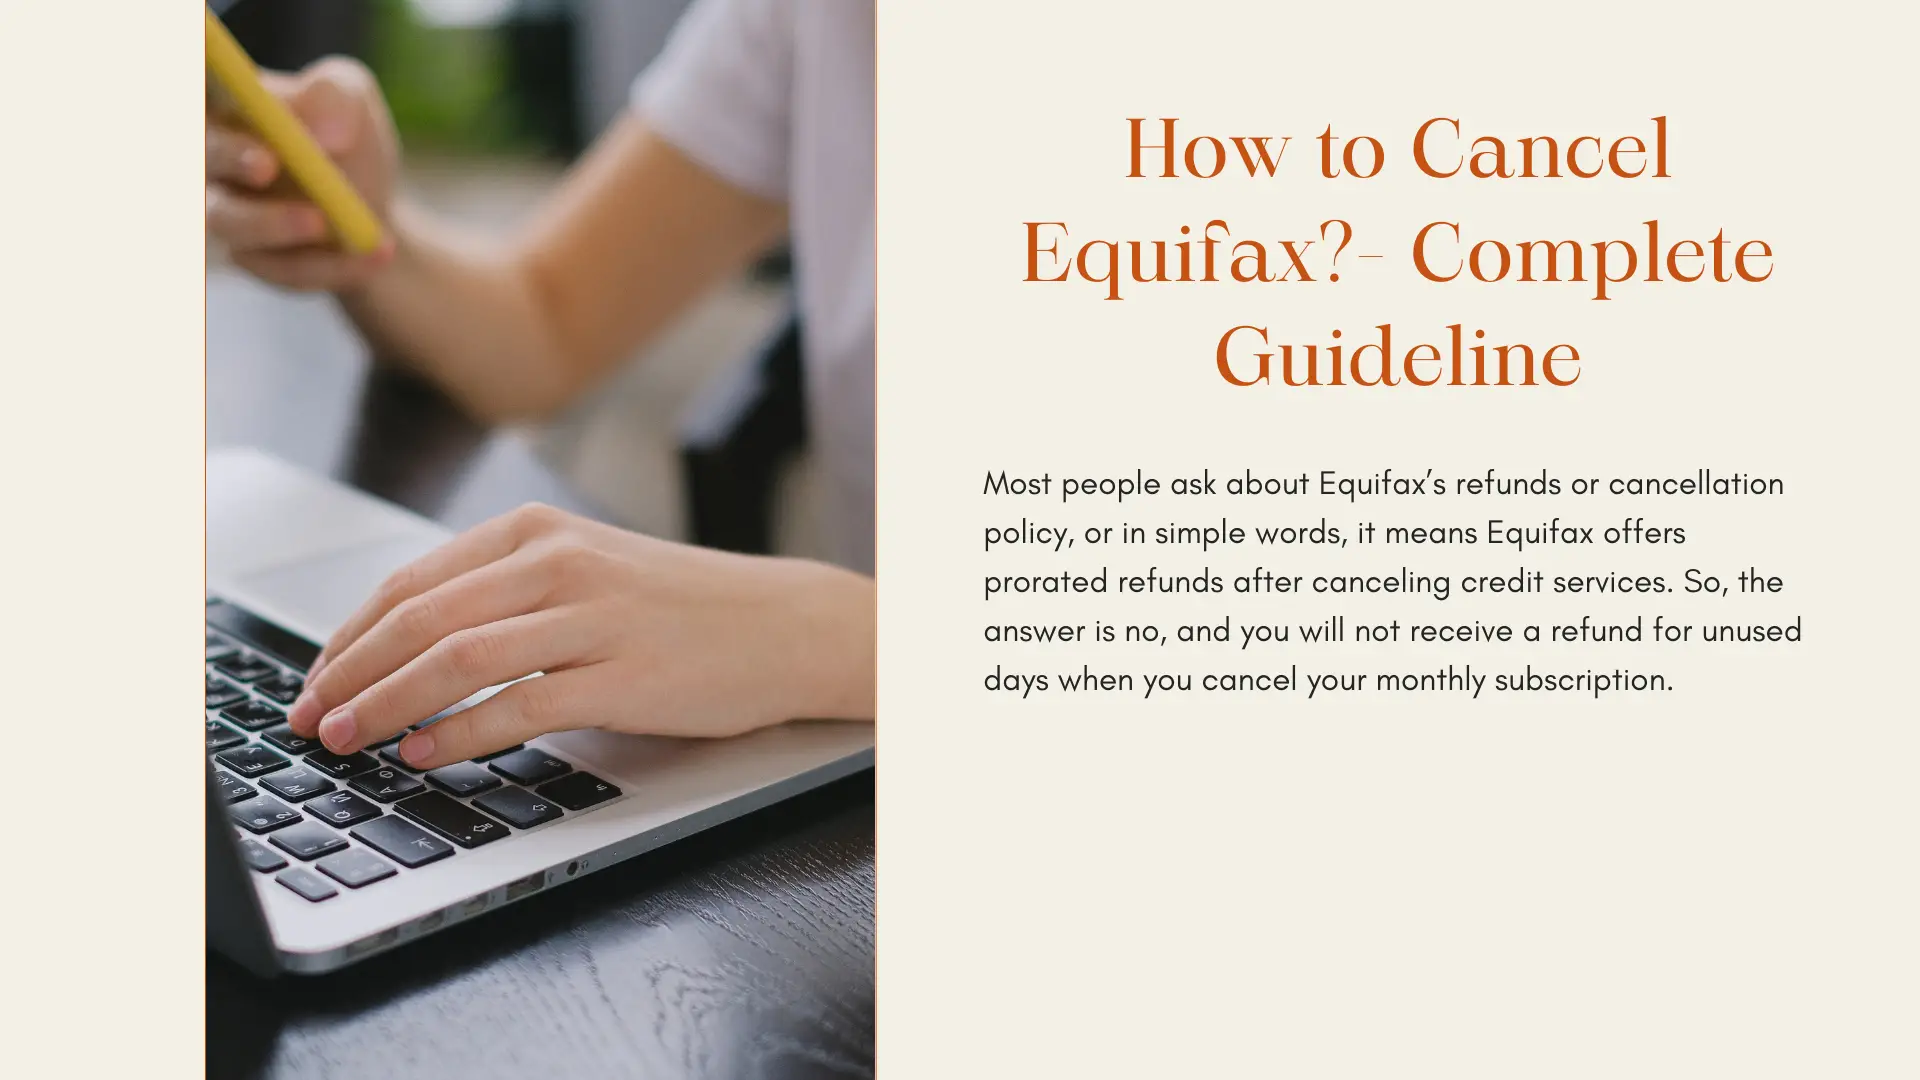 Je snadné zrušit předplatné Equifax?